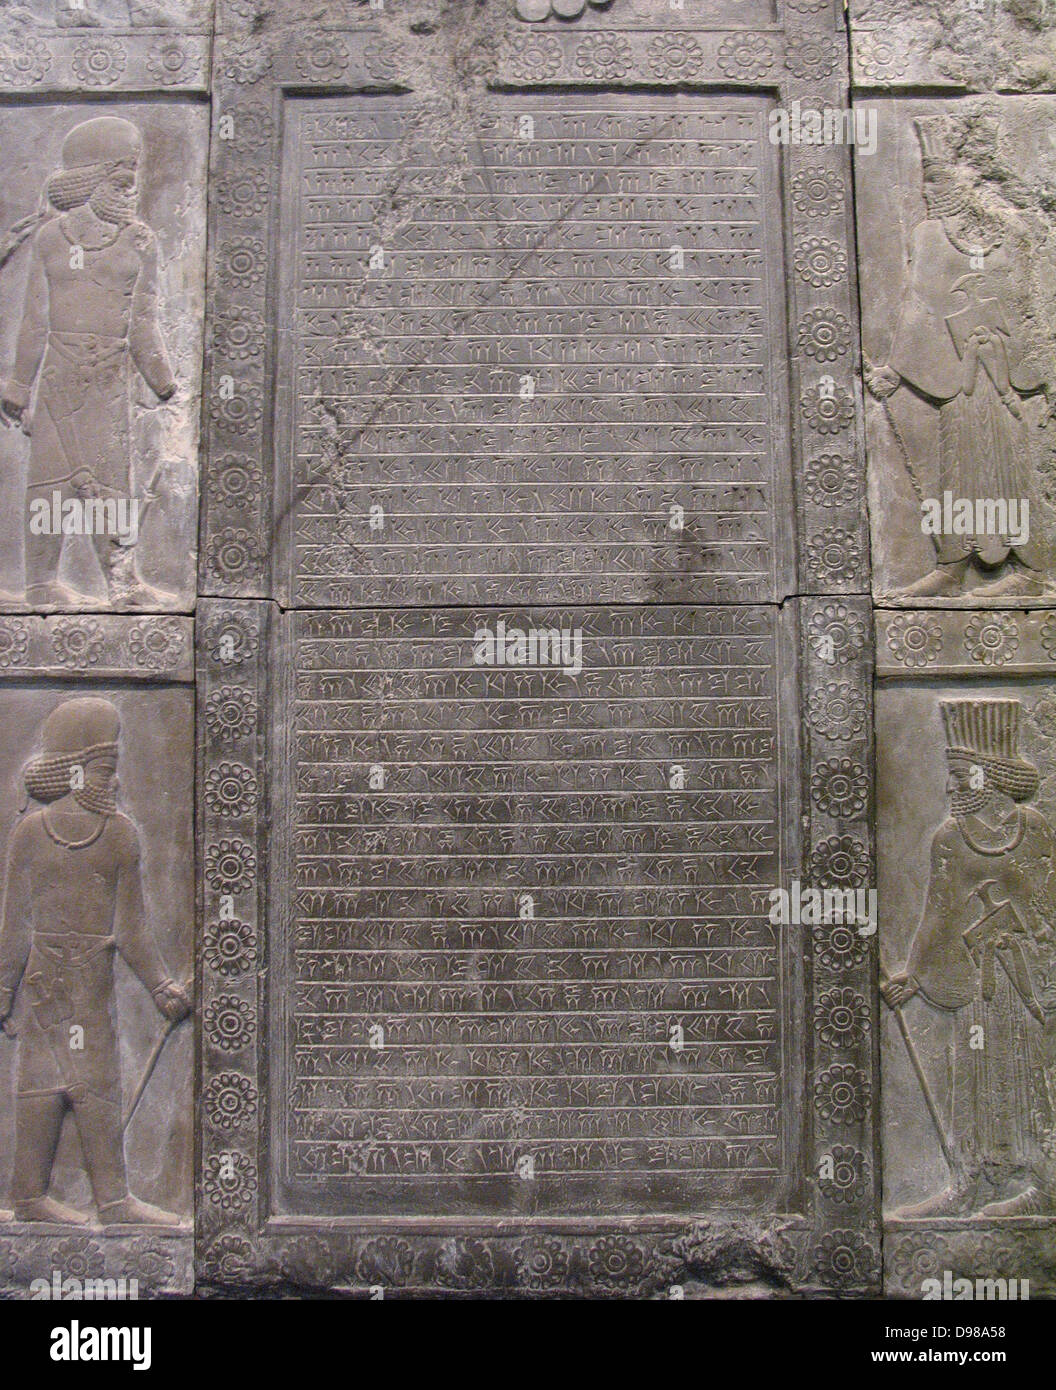 Questa iscrizione è scritto in un antico script chiamato il cuneiforme. Esso registra che il re Artaserse III (governata 359-338BC) ricostruita la scala su cui questa iscrizione è stato scolpito. La scala è stata una modifica successiva al Palazzo di Dario. Foto Stock